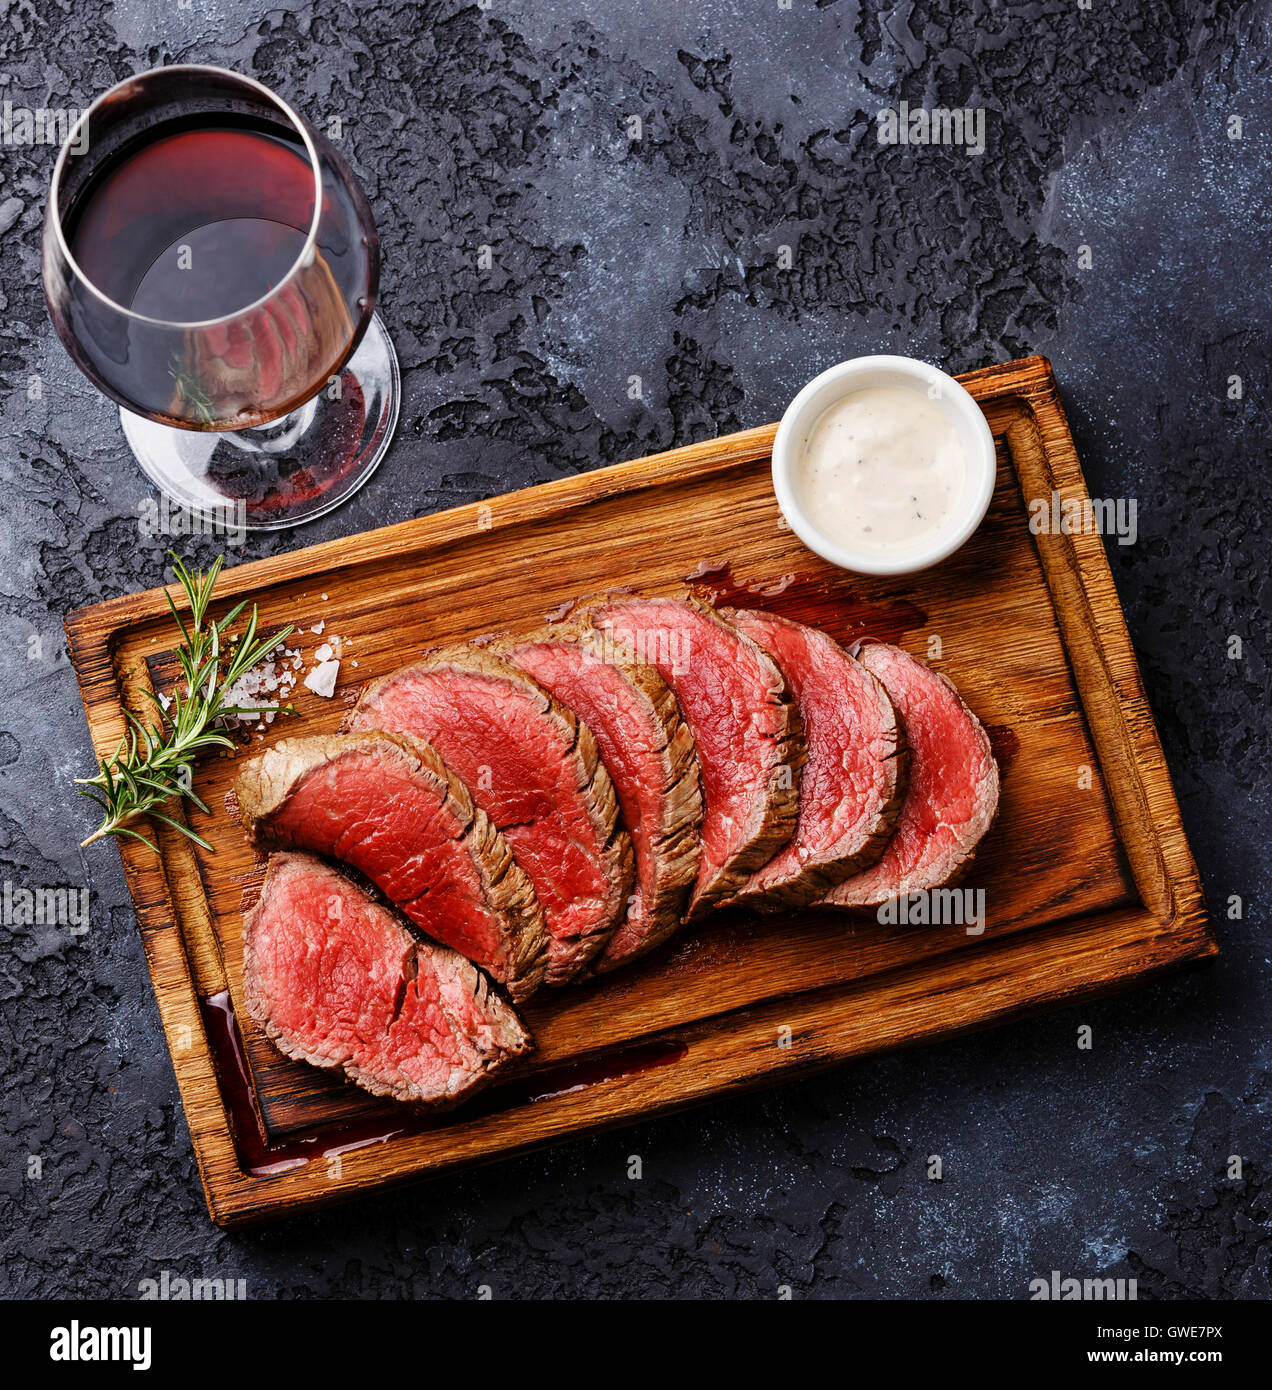 Tranches de filet mignon grillé Steak roastbeef et sauce au piment sur planche à découper en bois et le vin rouge sur fond sombre Banque D'Images